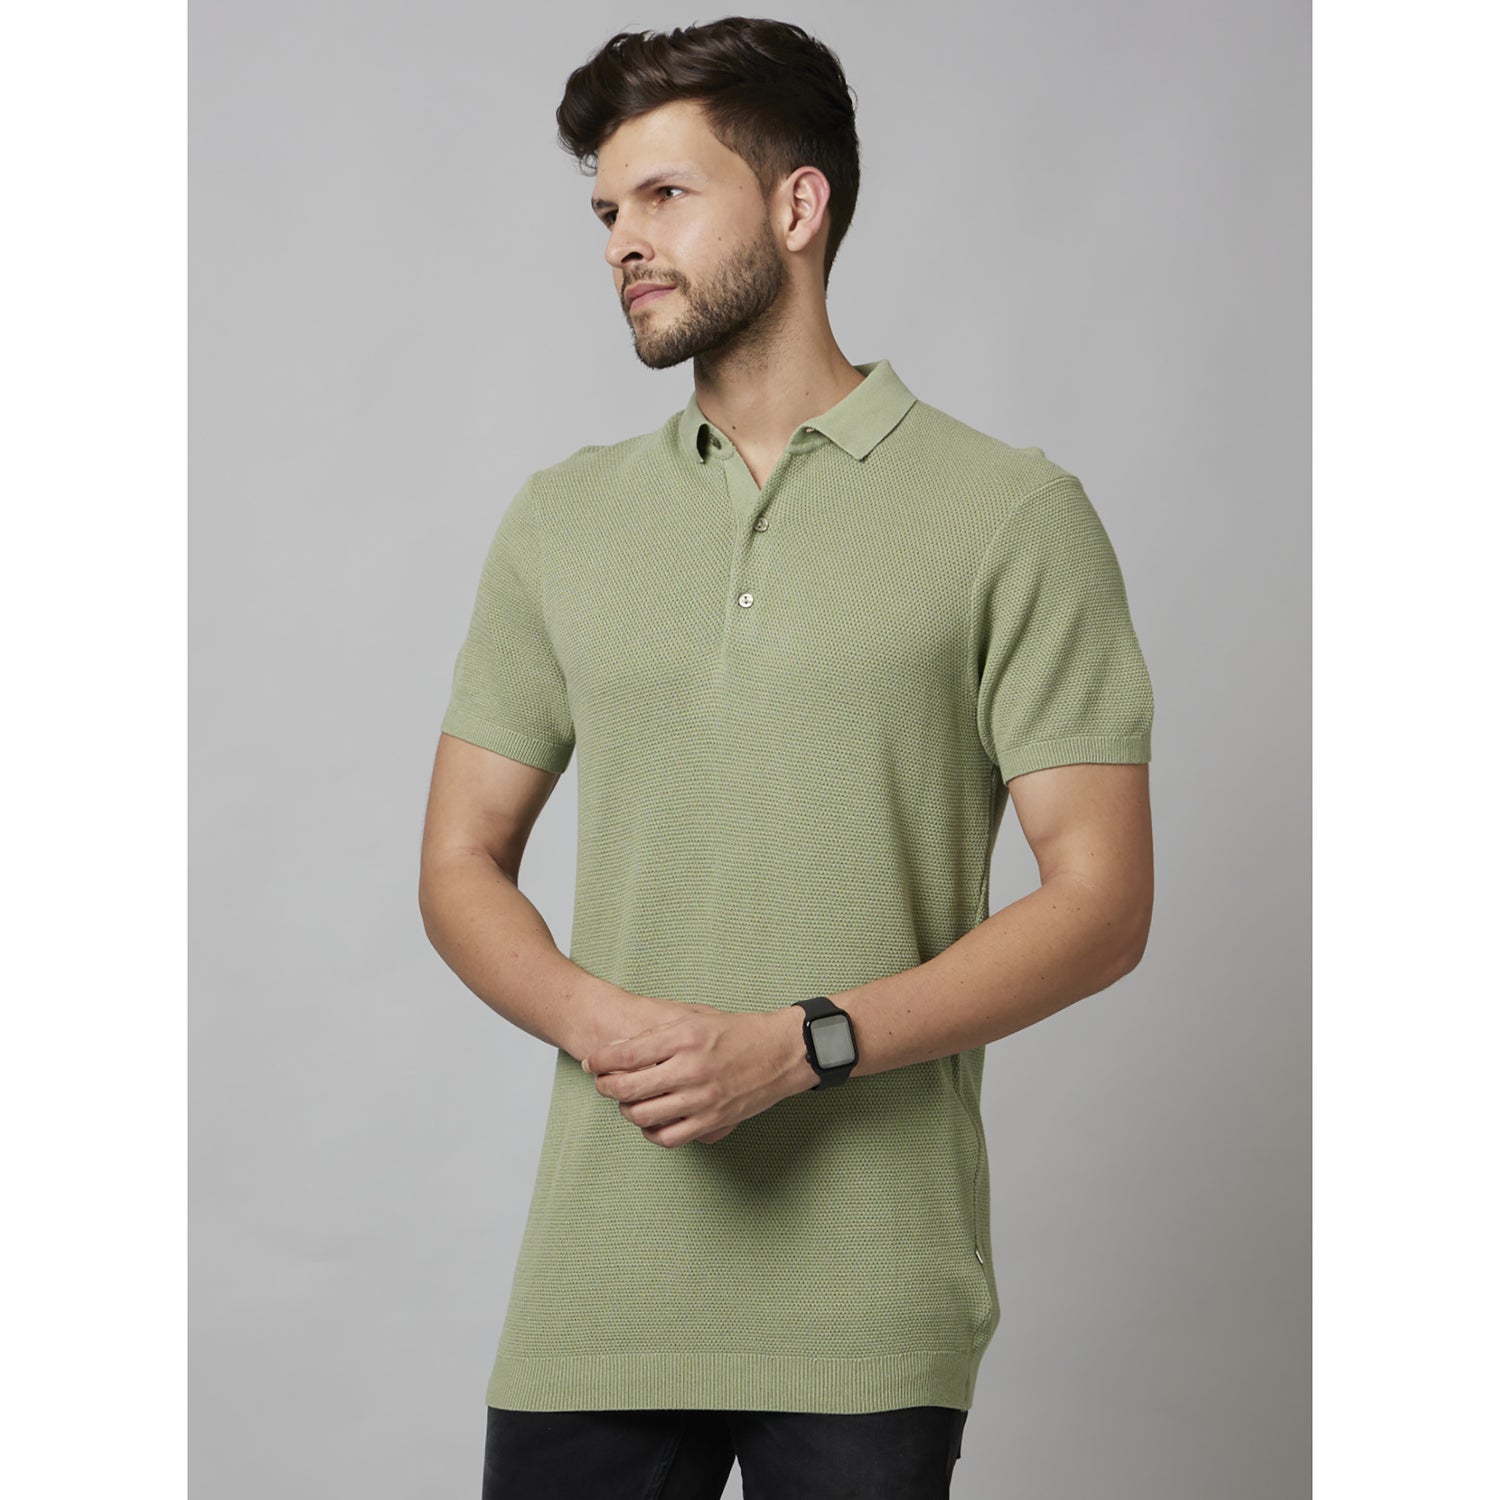 Light Green Textured Short Sleeve Cotton T-Shirts (DEMASSI2)